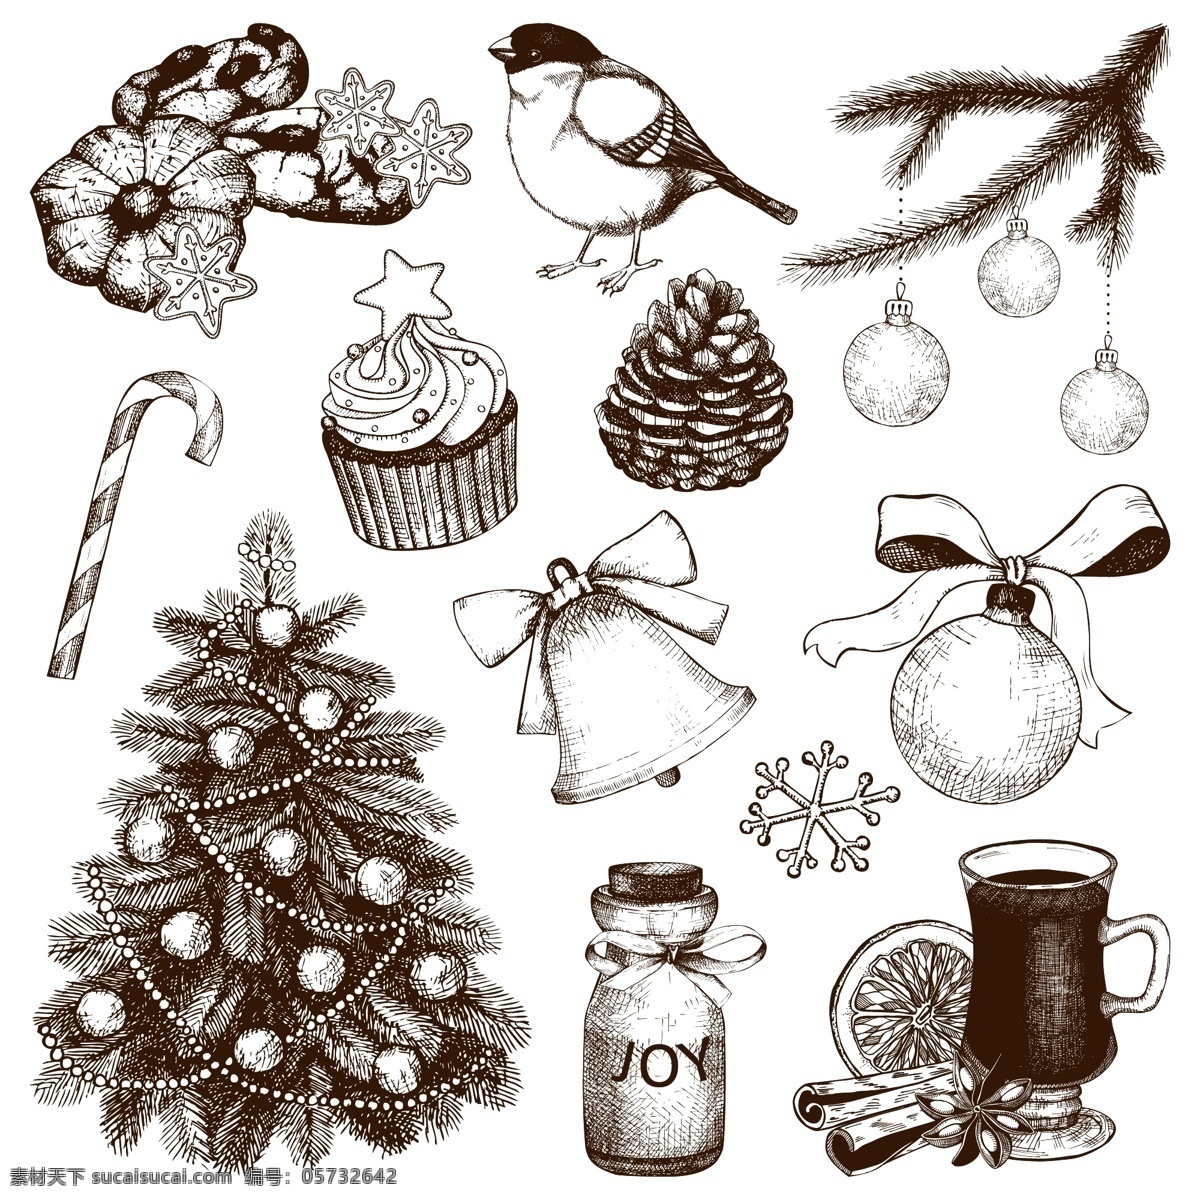 圣诞节 食物 简约 图标 矢量 圣诞 鸟 糖果 可爱 矢量素材 平面素材